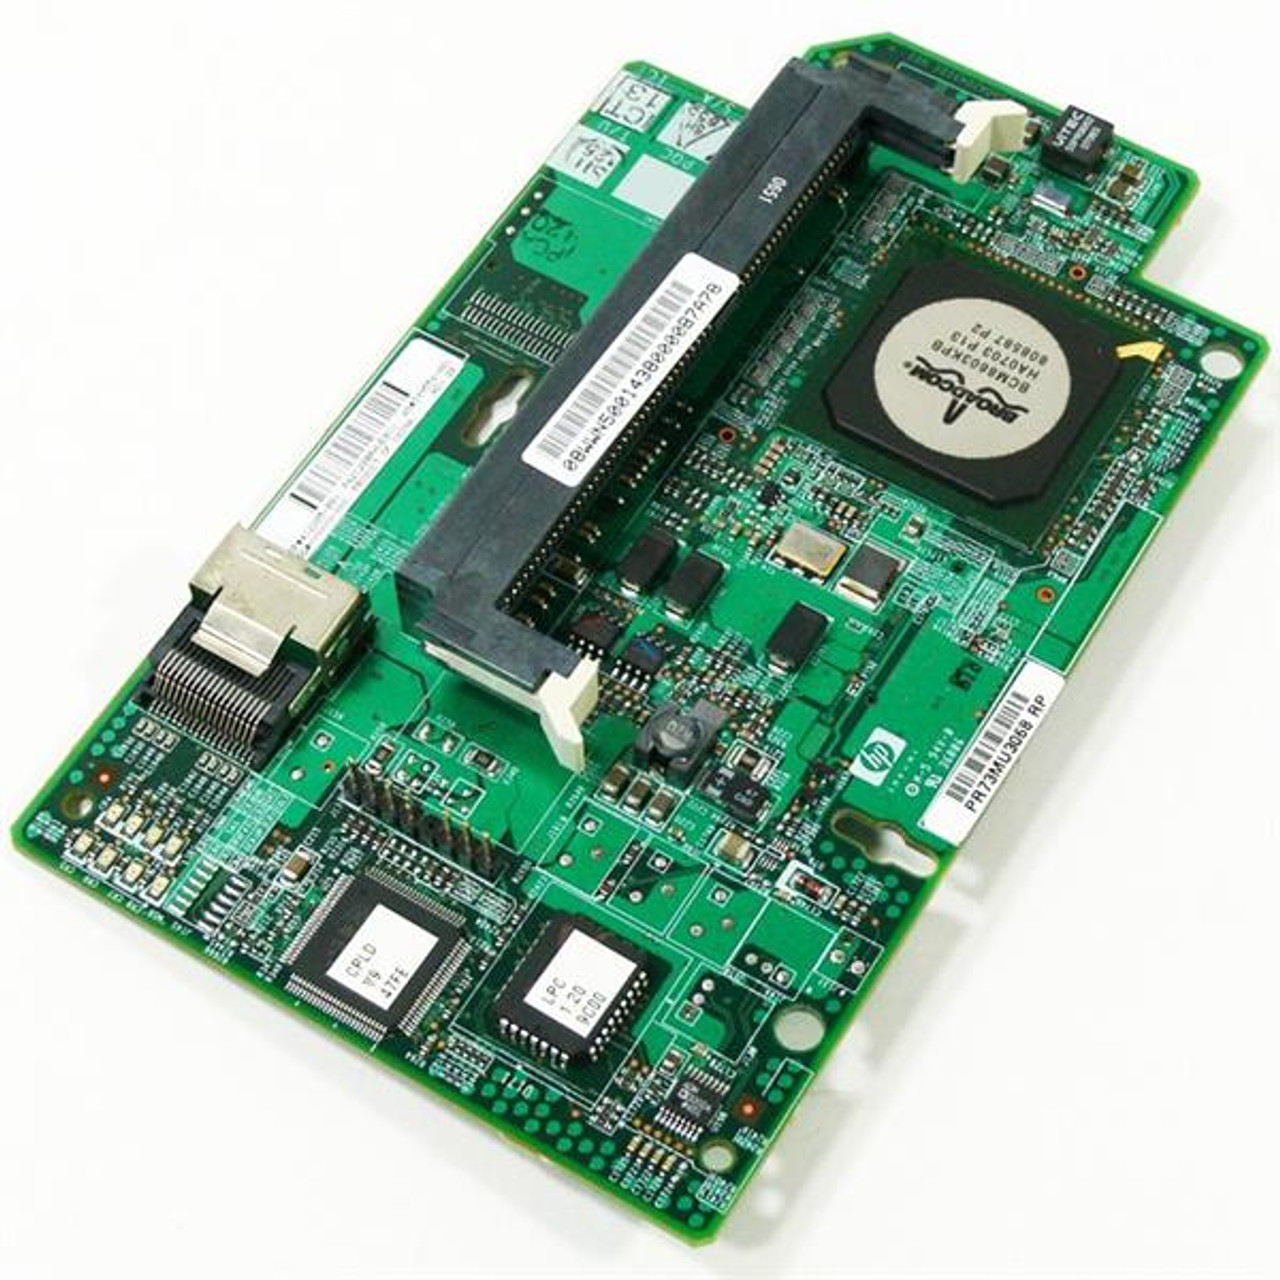 399558-001 - HP Smart Array E200i Fio SAS Controller with 64MB Cache Module